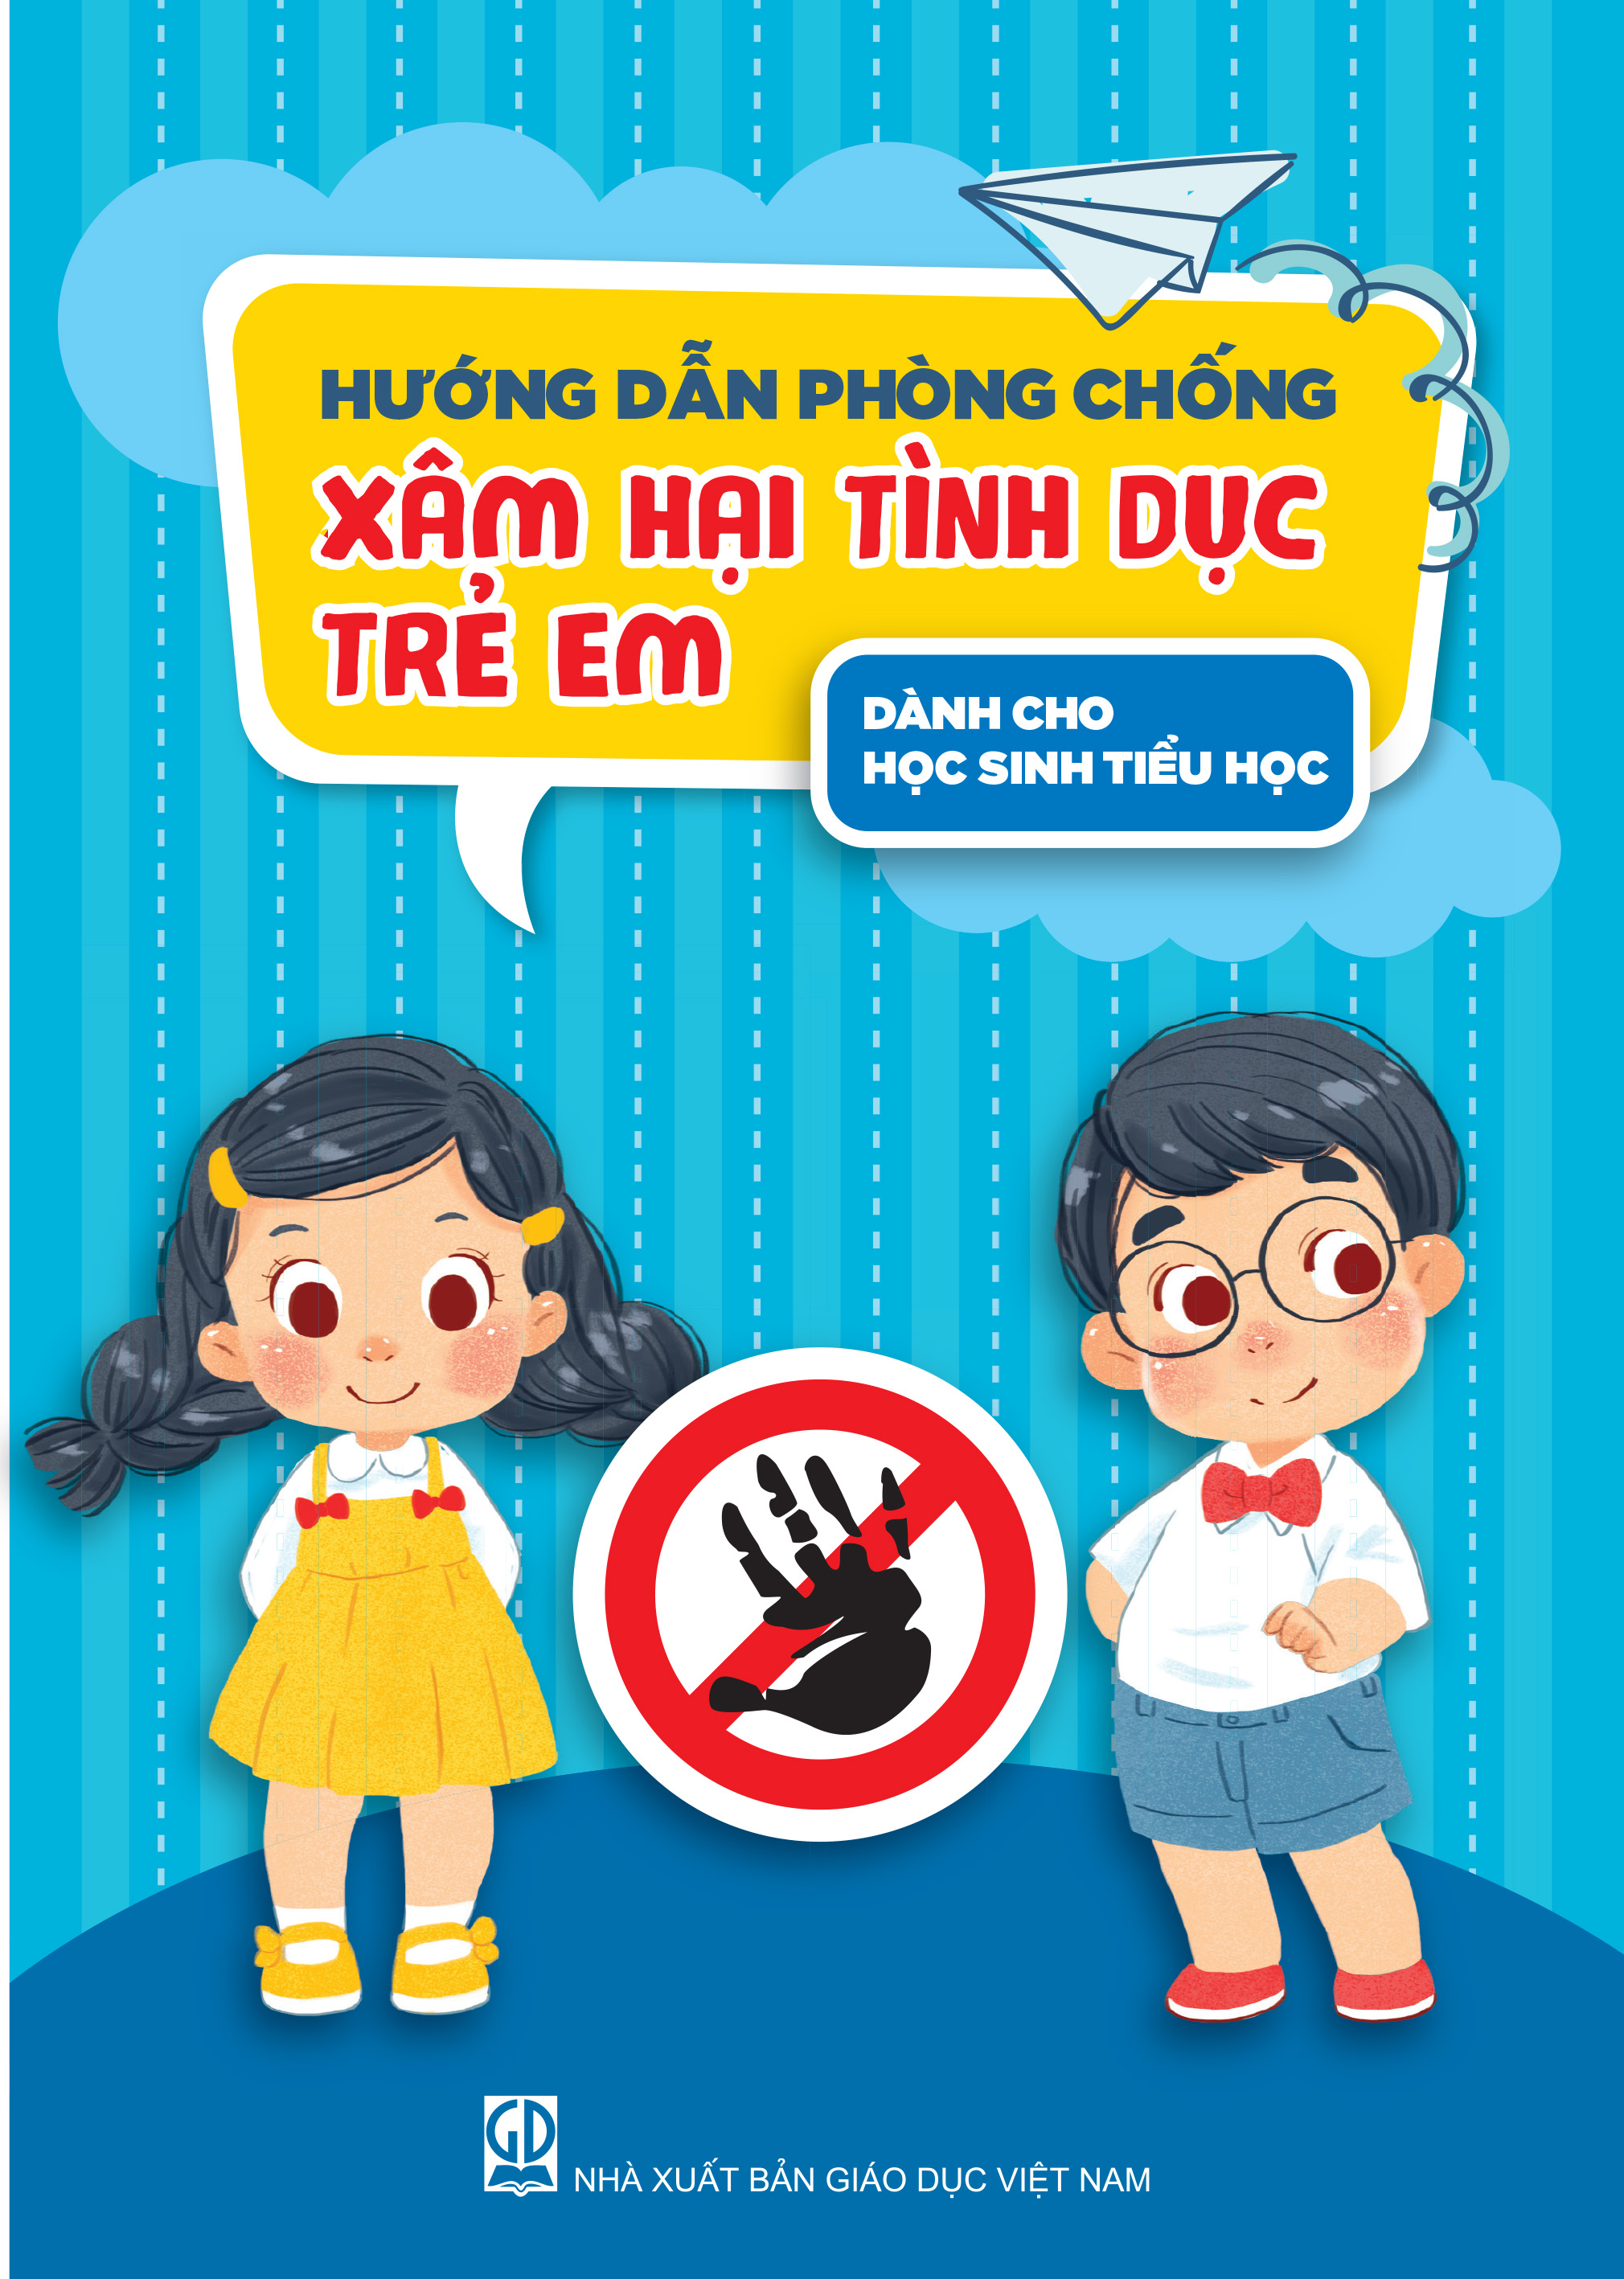 Hướng dẫn phòng chống xâm hại tình dục trẻ em (dành cho học sinh tiểu học)